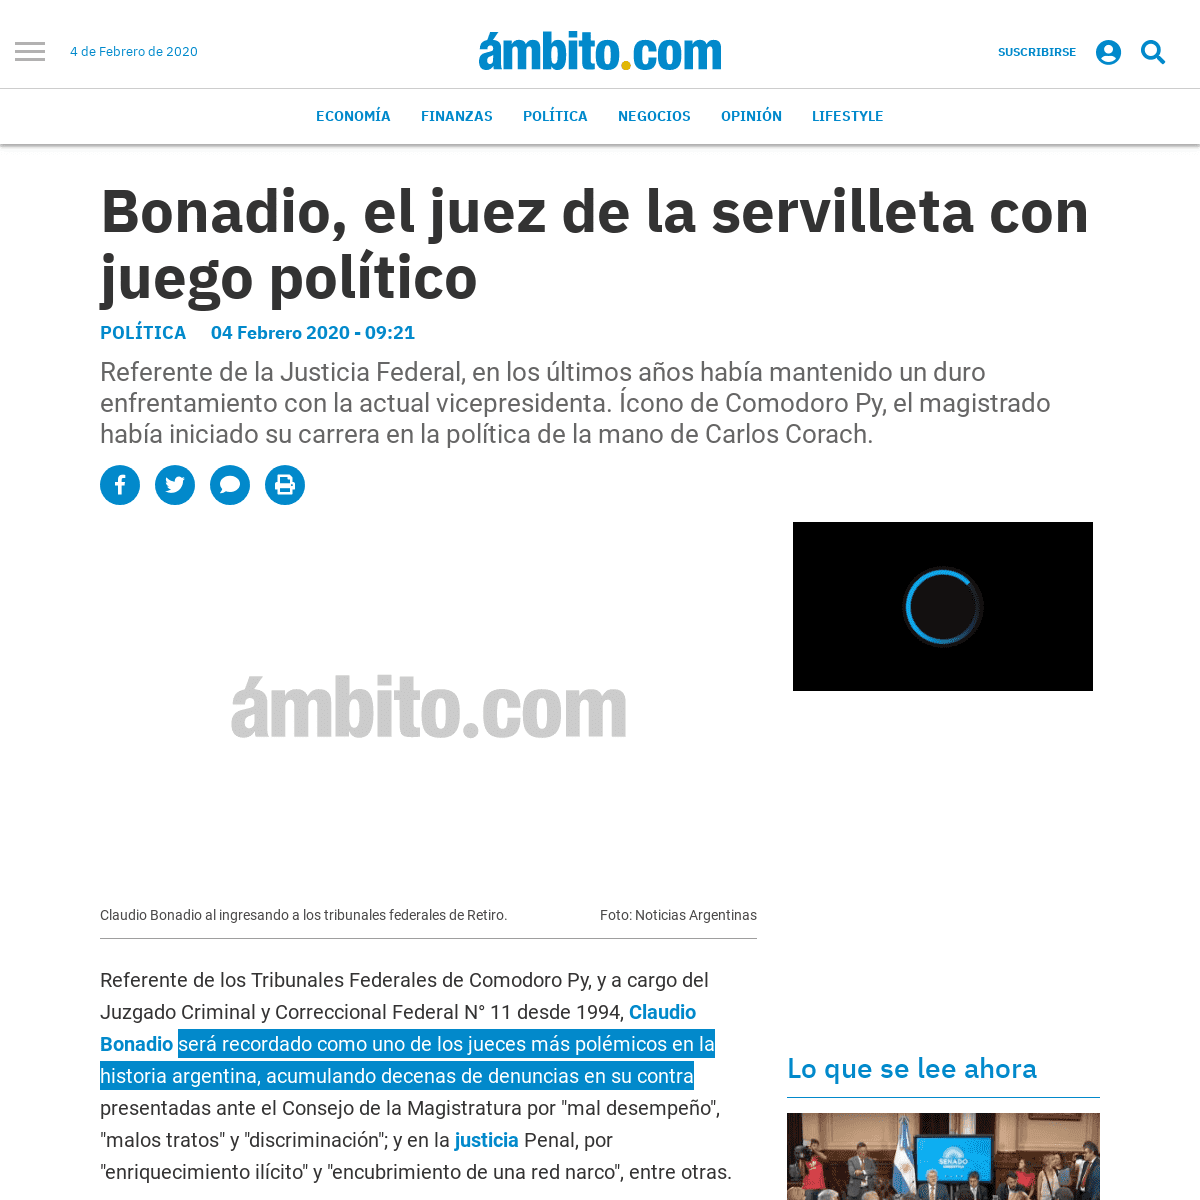 A complete backup of www.ambito.com/politica/claudio-bonadio/bonadio-el-juez-la-servilleta-juego-politico-n5080808